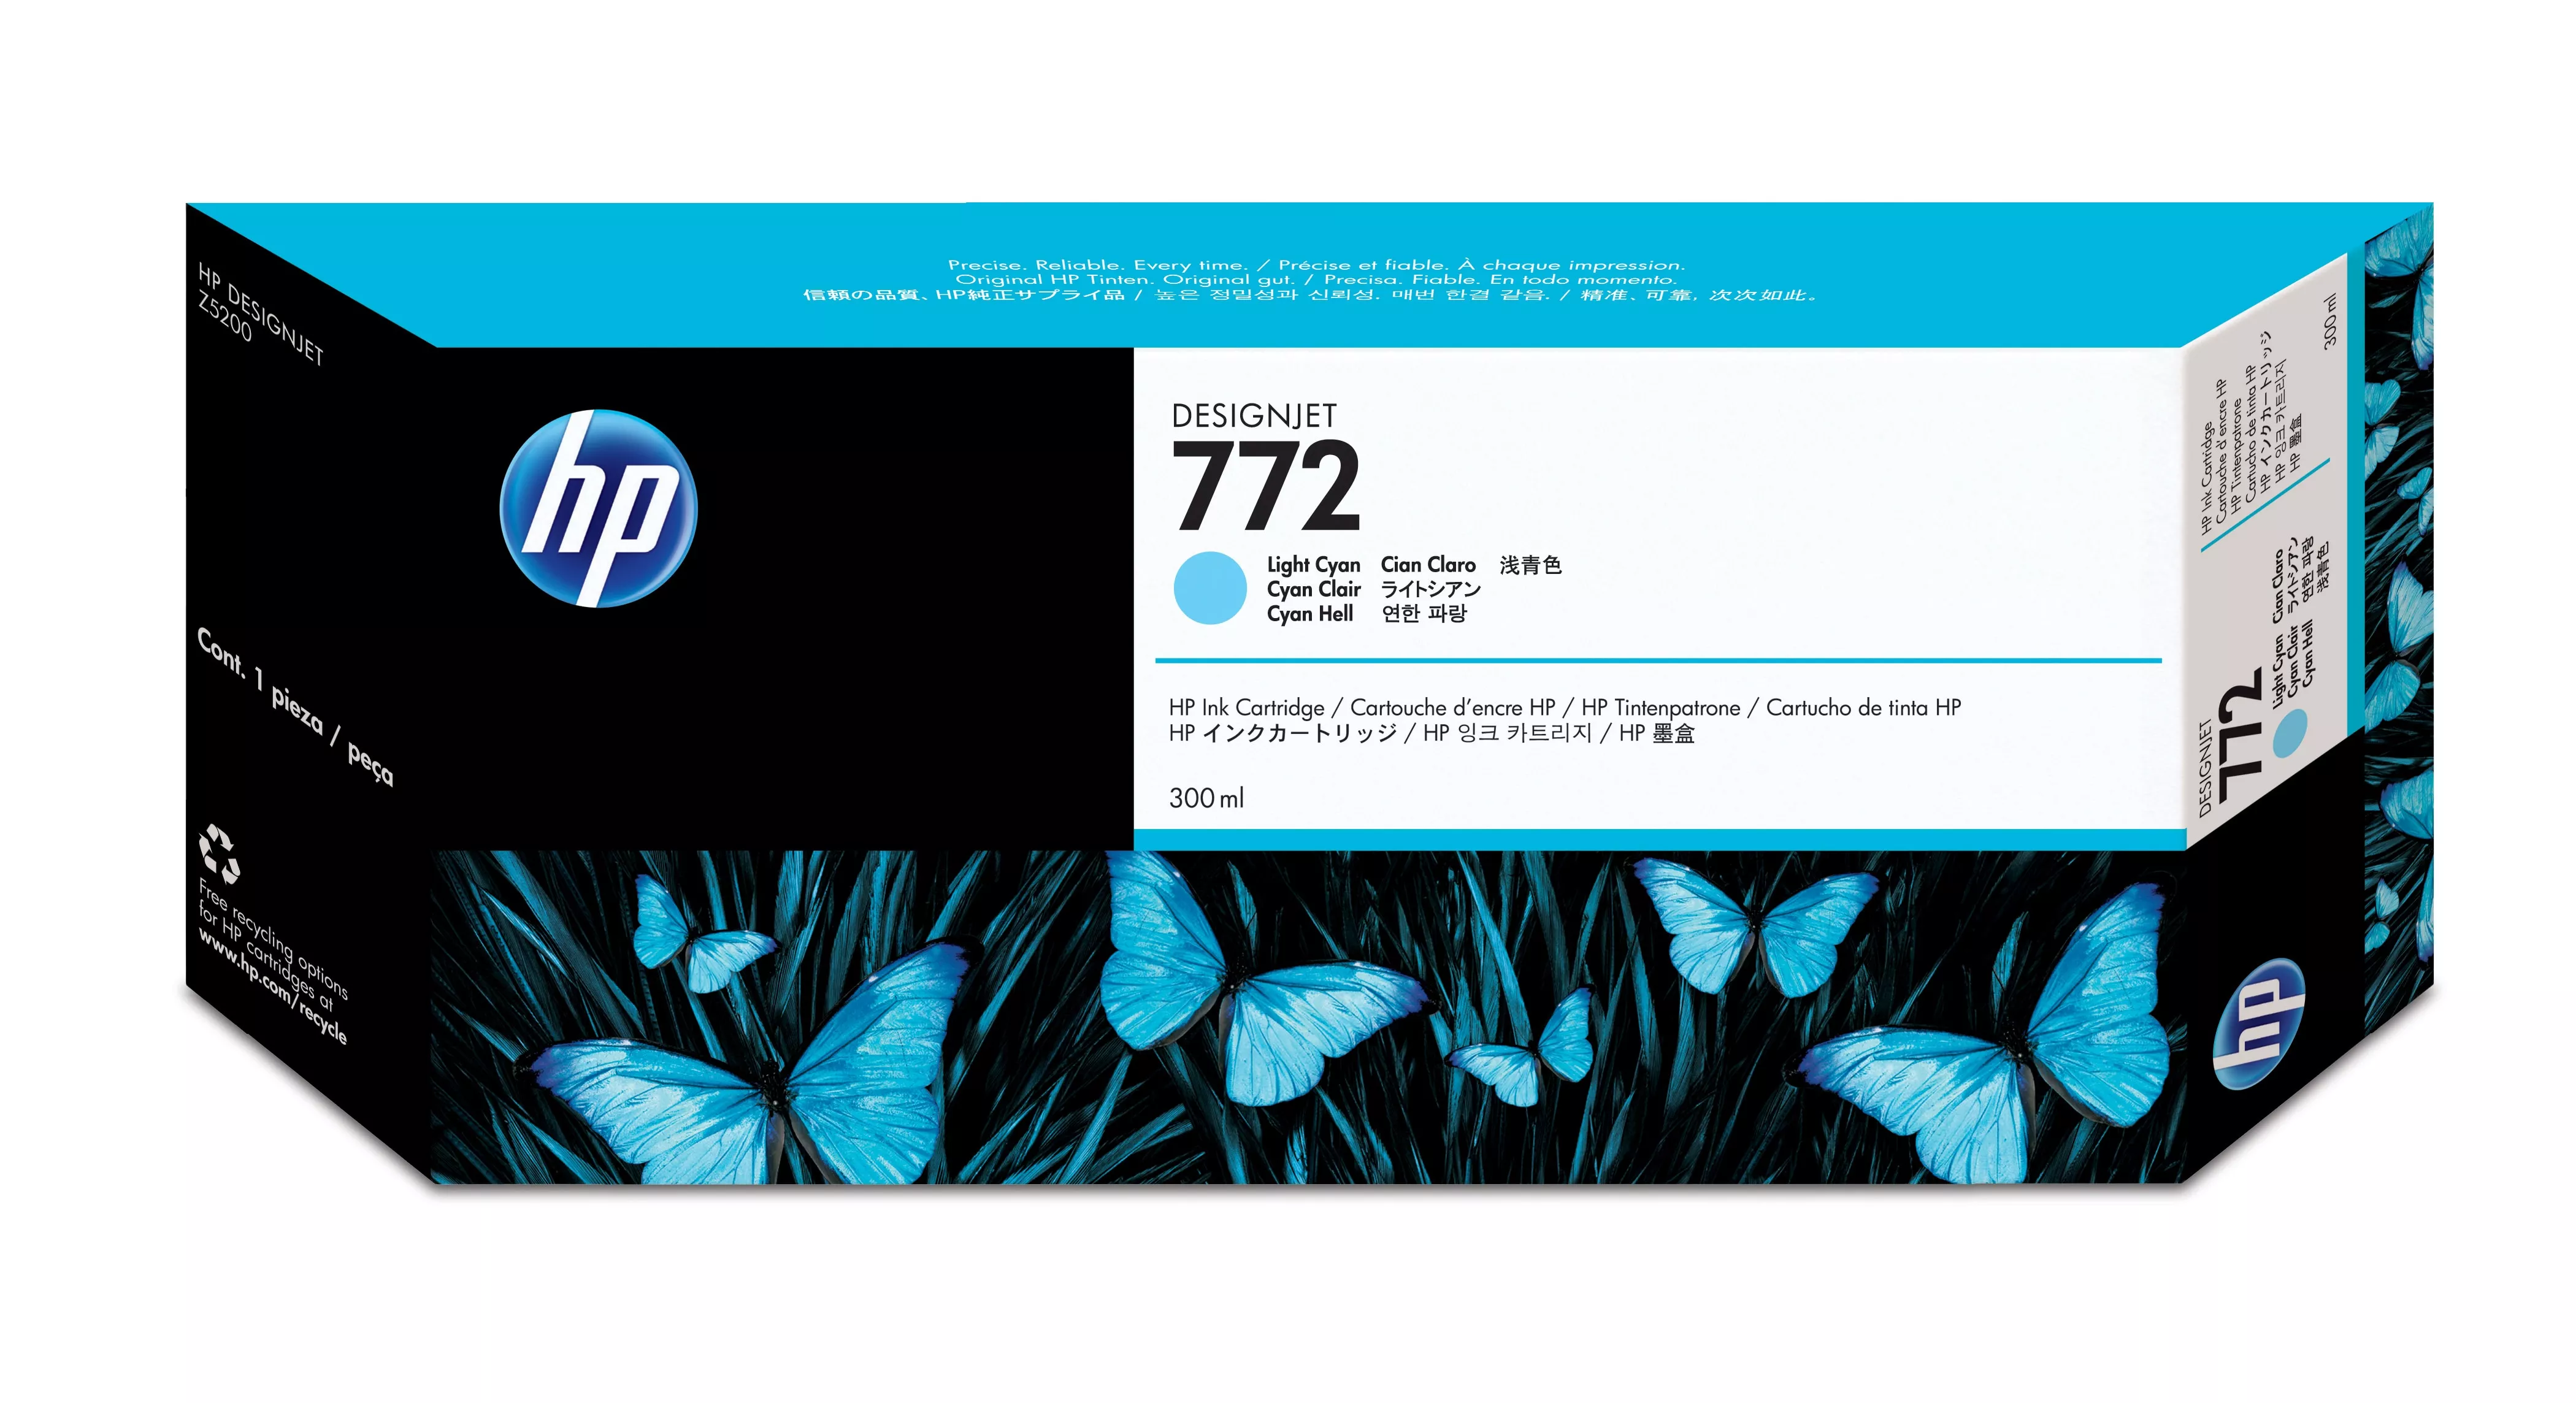 Vente HP 772 original Ink cartridge CN632A light cyan standard au meilleur prix